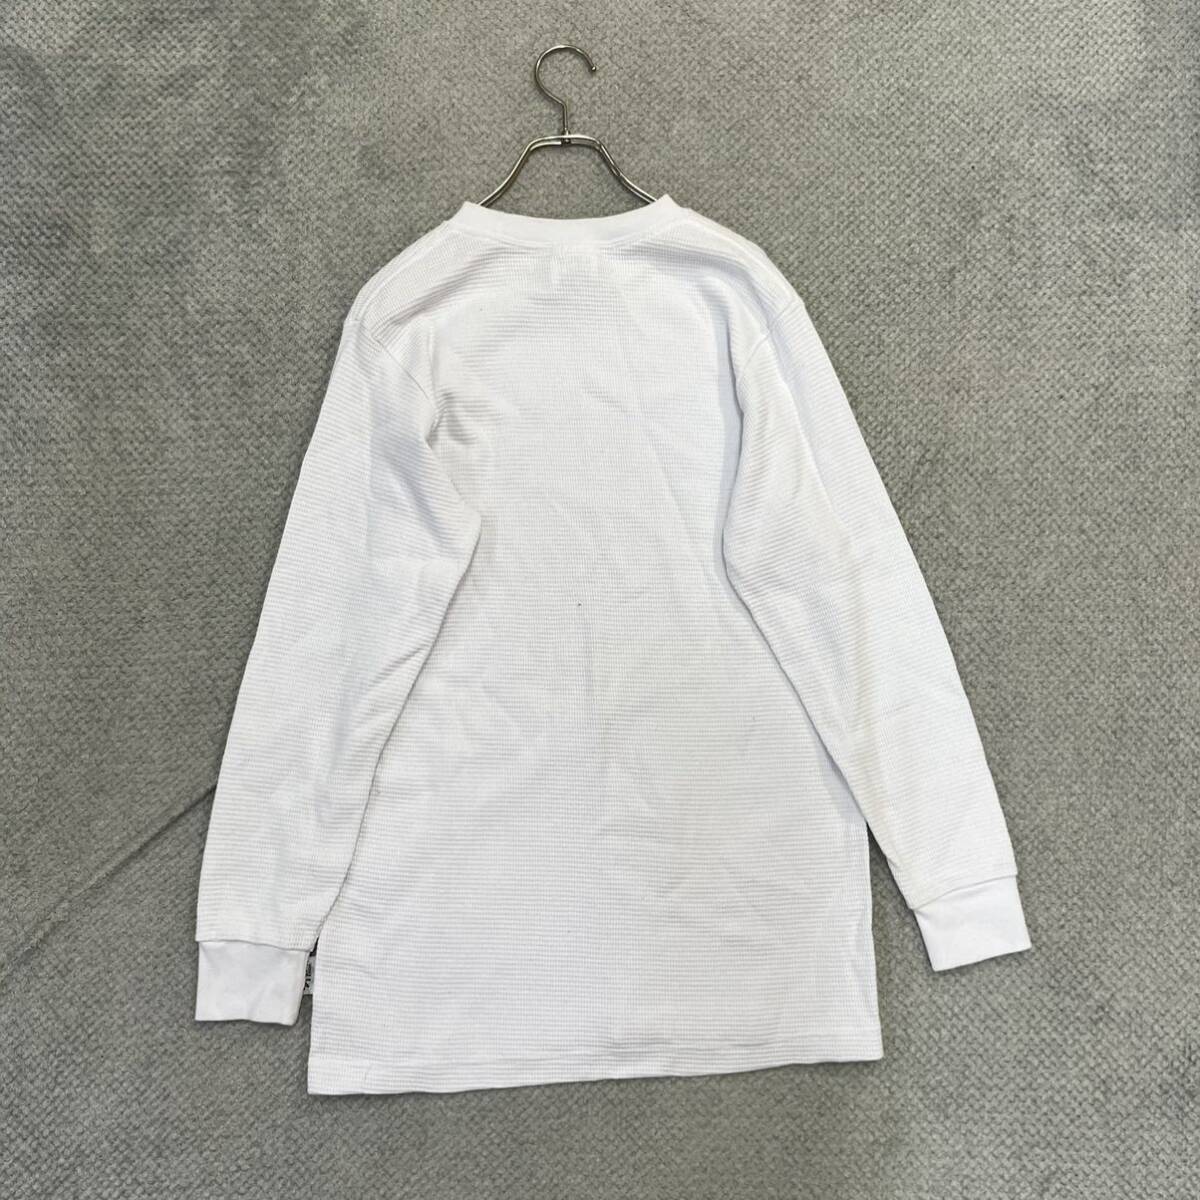 1円スタート! （4）SHAKA WEAR シャカウェア サーマルロンT サイズS 長袖Tシャツ USAコットン ホワイト 白 無地 メンズ トップス 最落なしの画像2